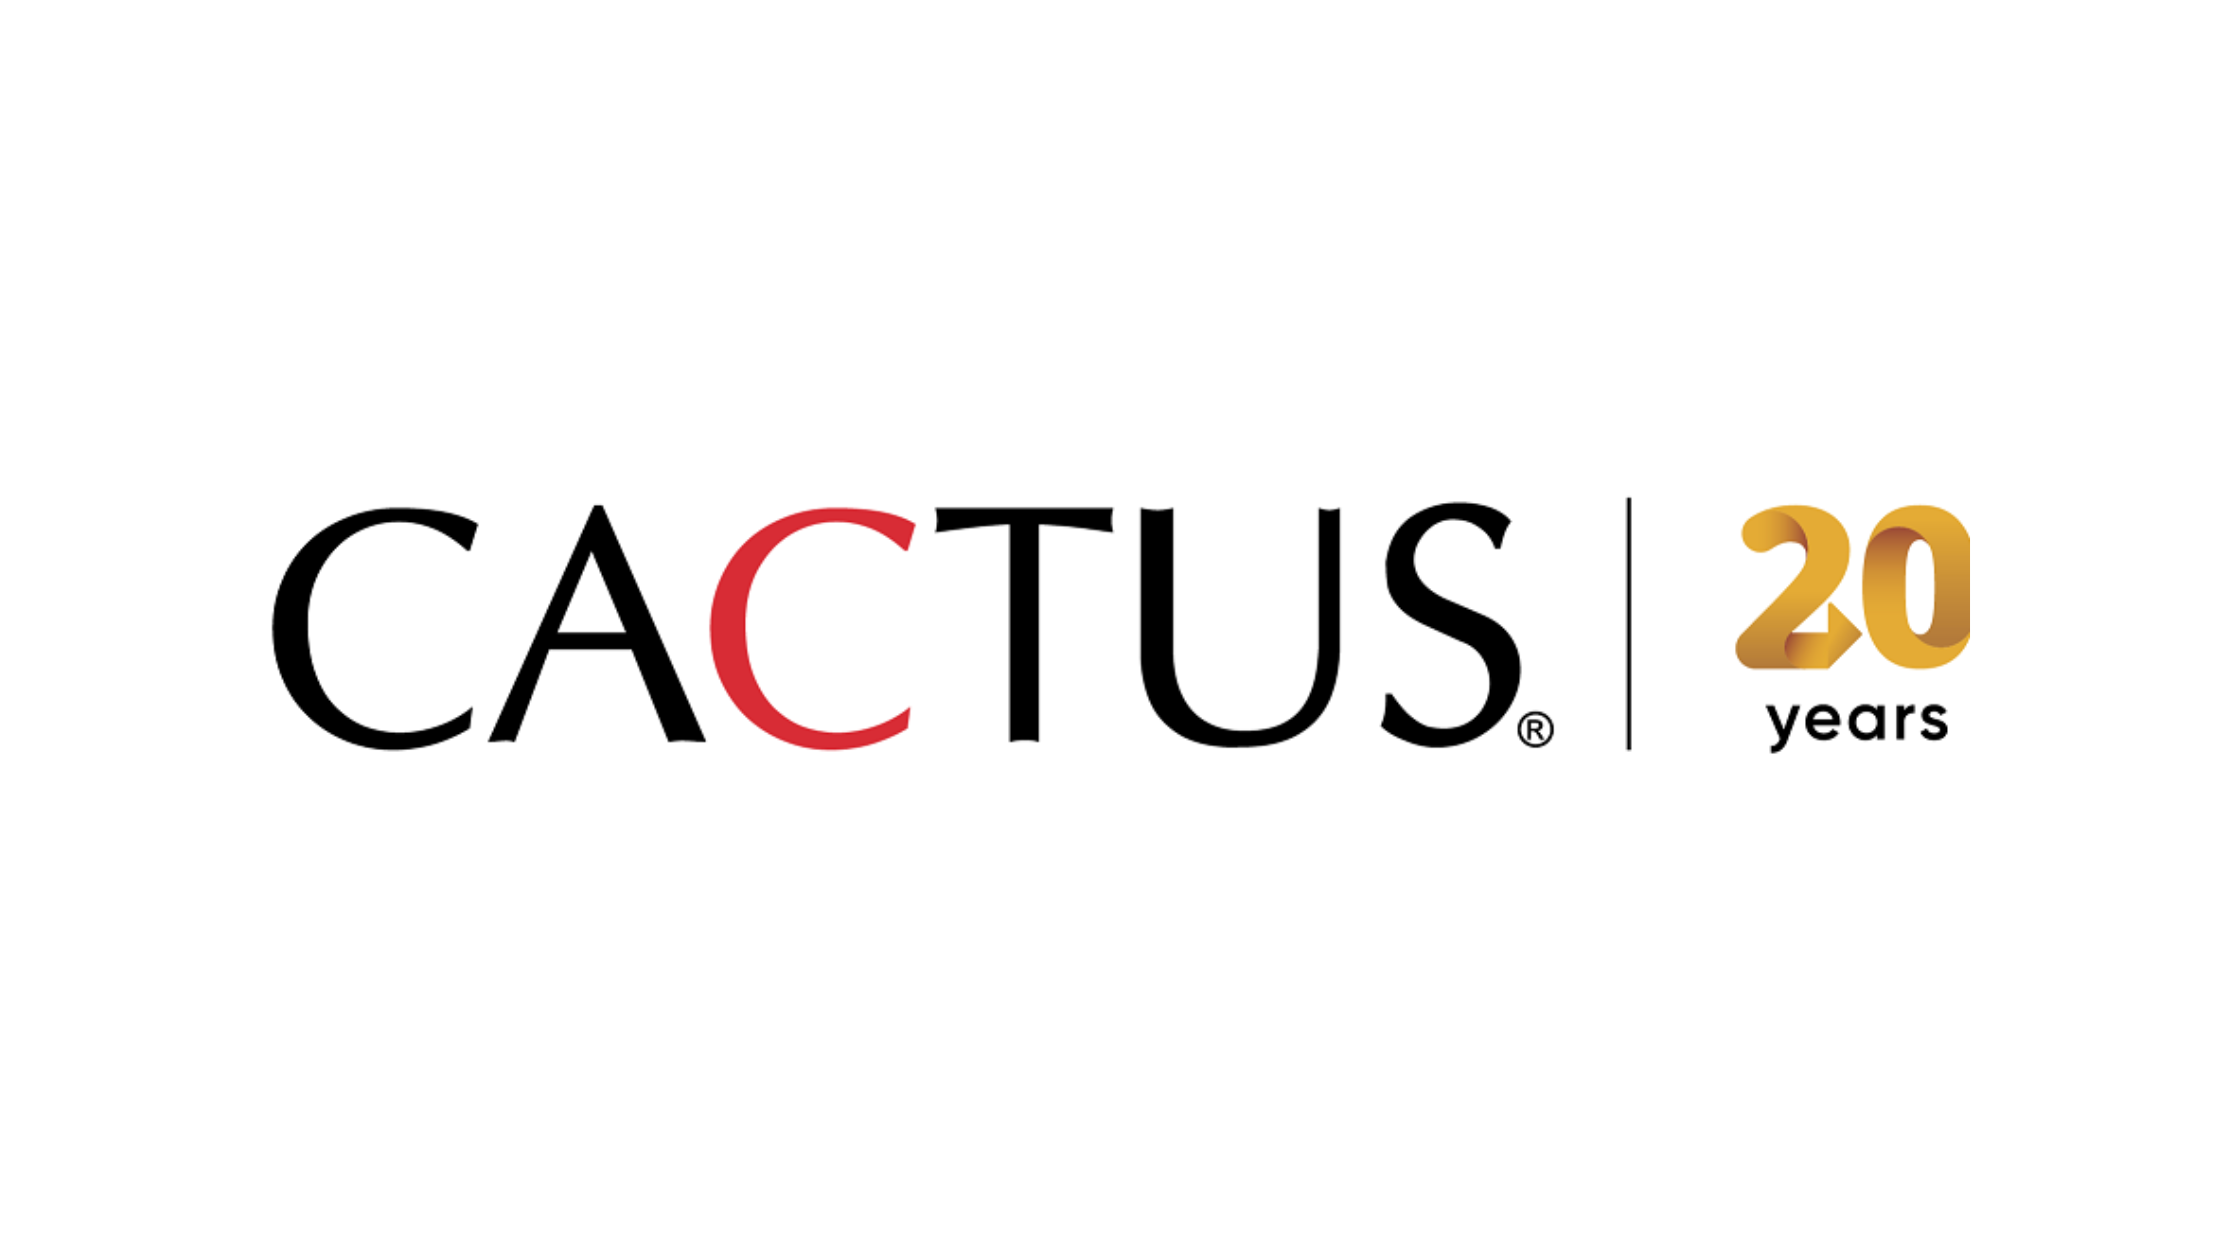 Cactus Communications Recruitment